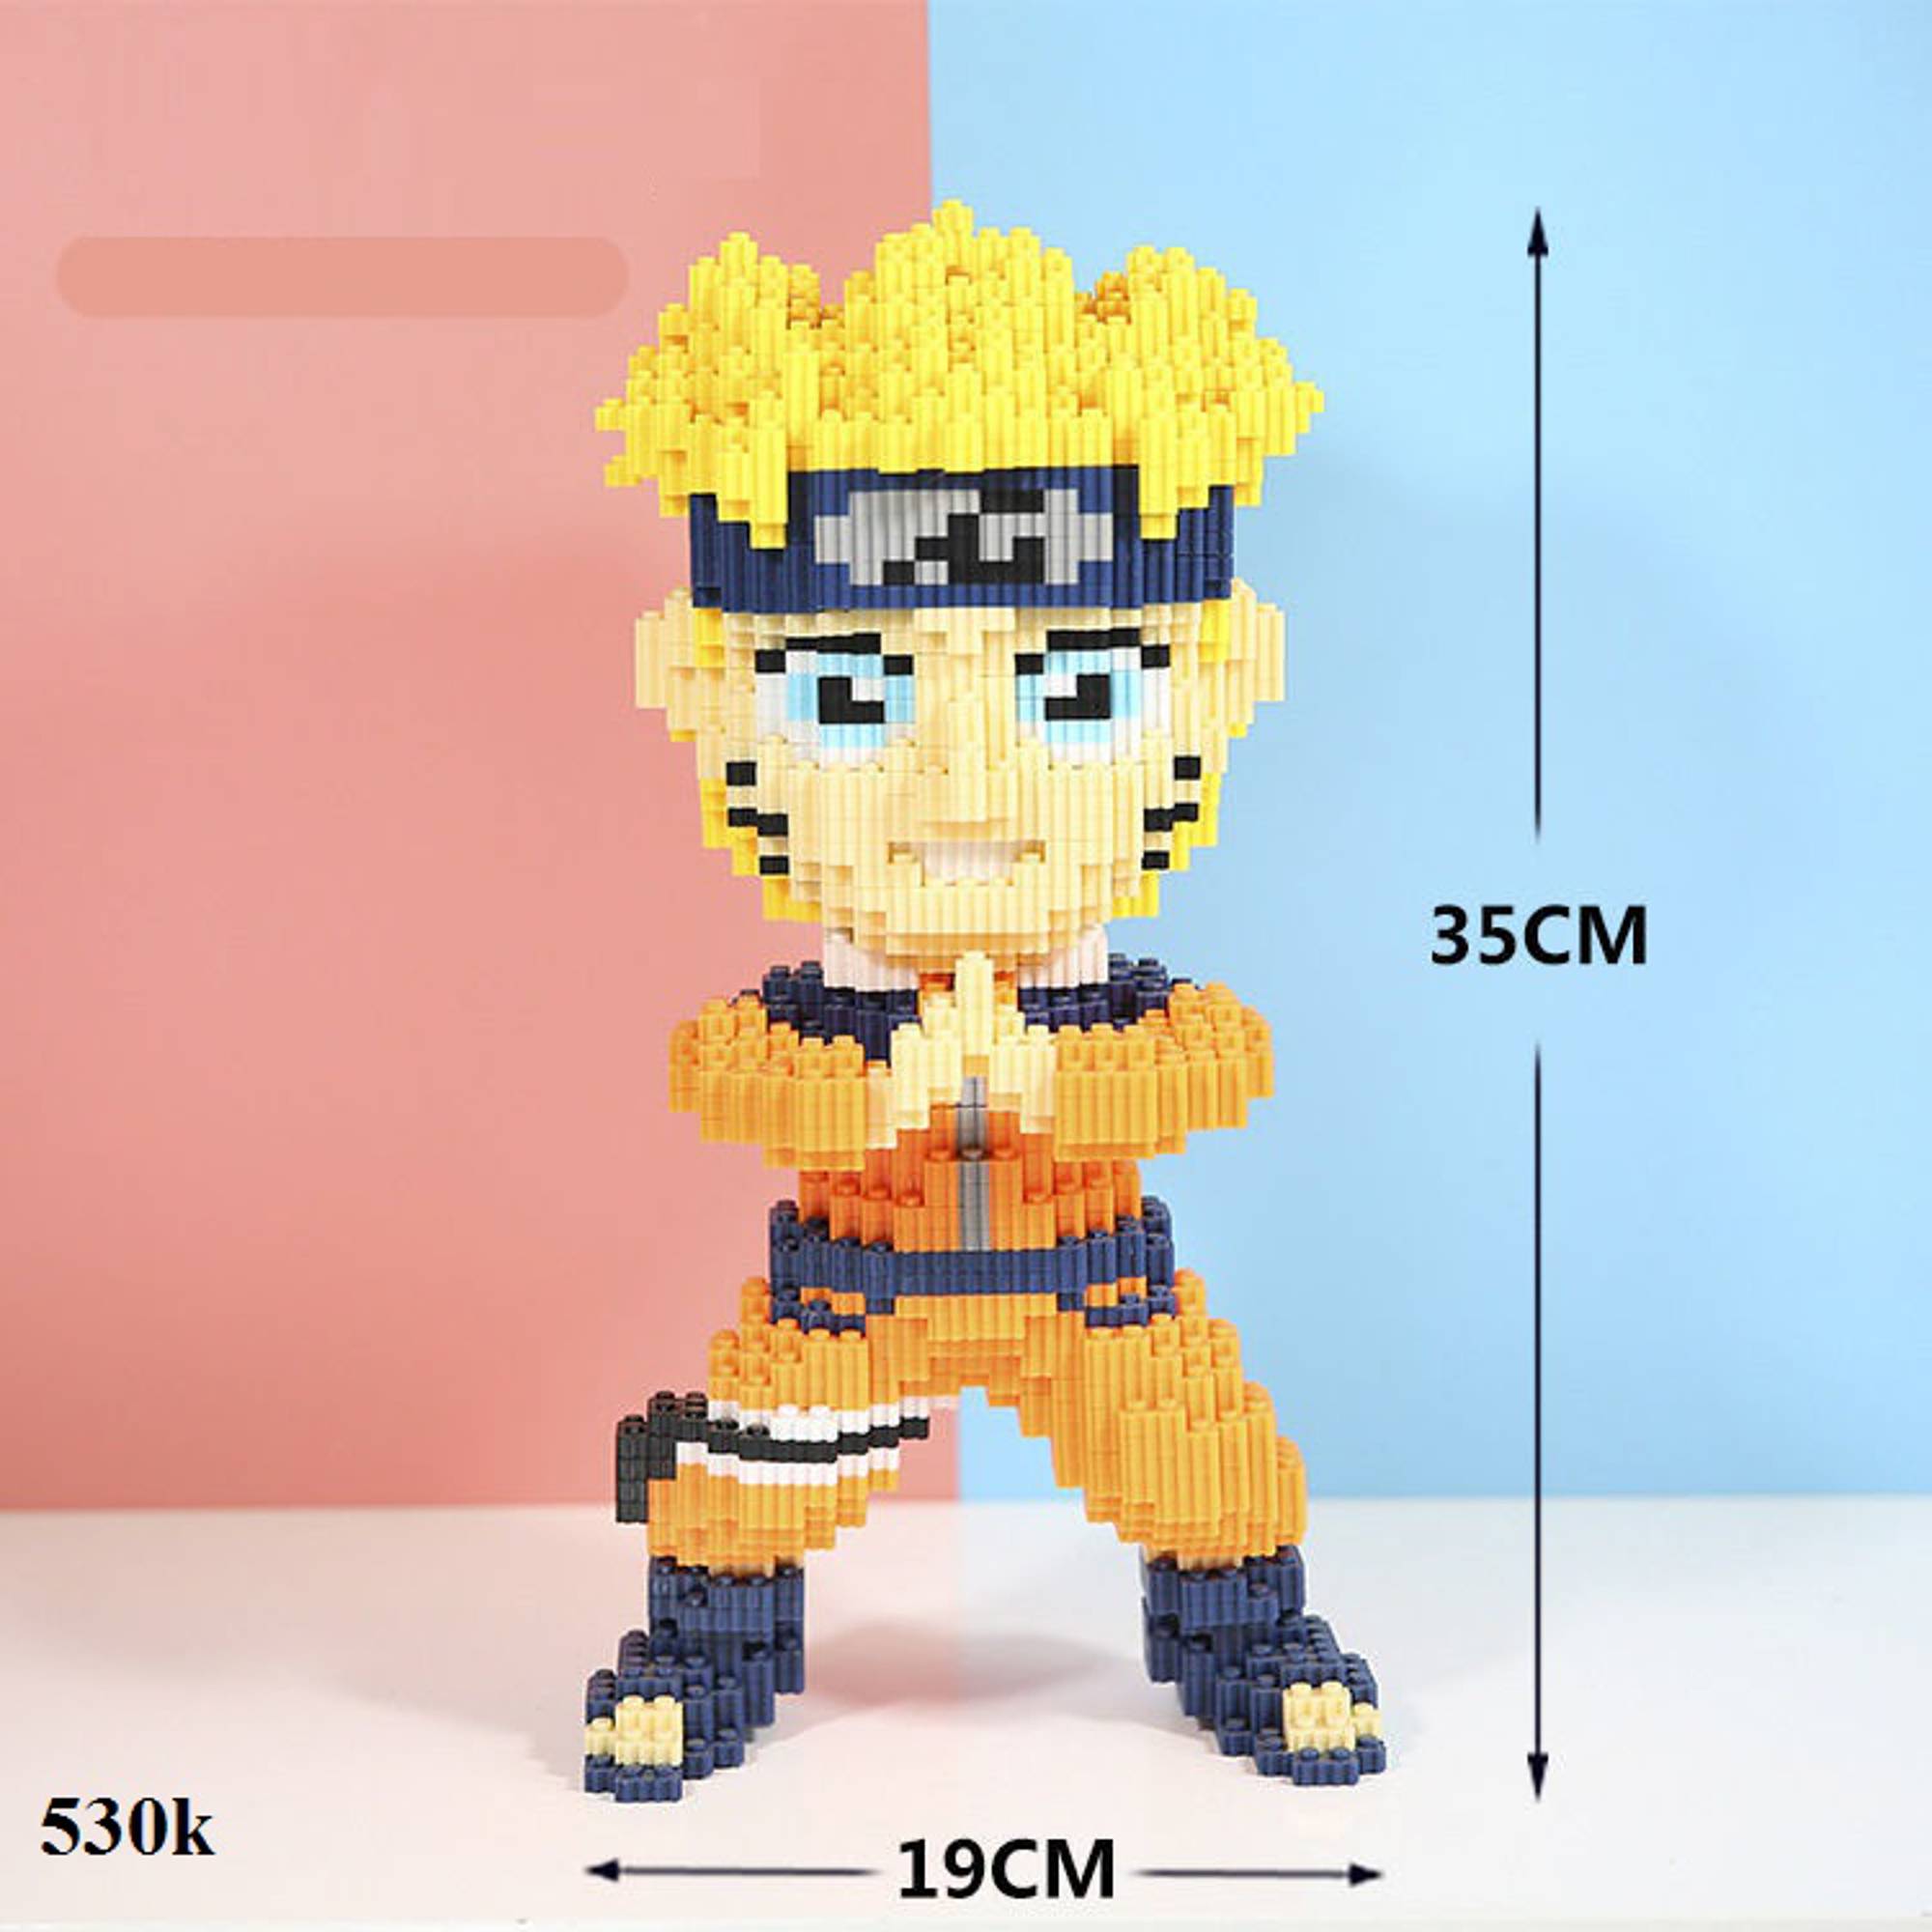 Mô Hình đồ chơi  Naruto có 3 đầu cao 25cm hàng chất lượng  Naruto  Có  Hộp Màu